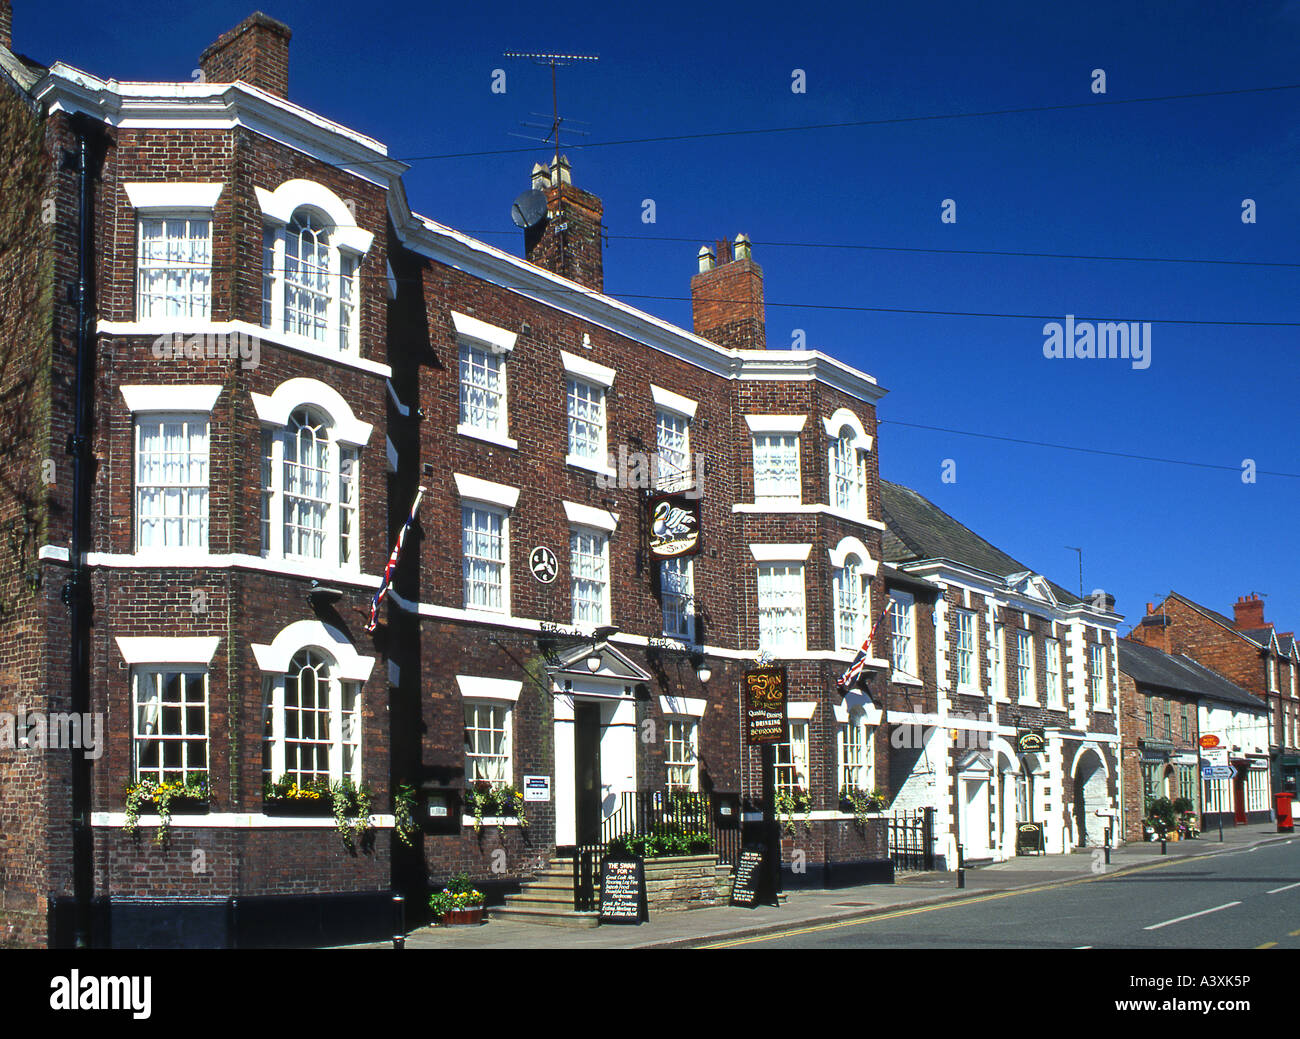 The Swan Inn, Tarporley High Street, Tarporley, Cheshire, England, UK Stock Photo